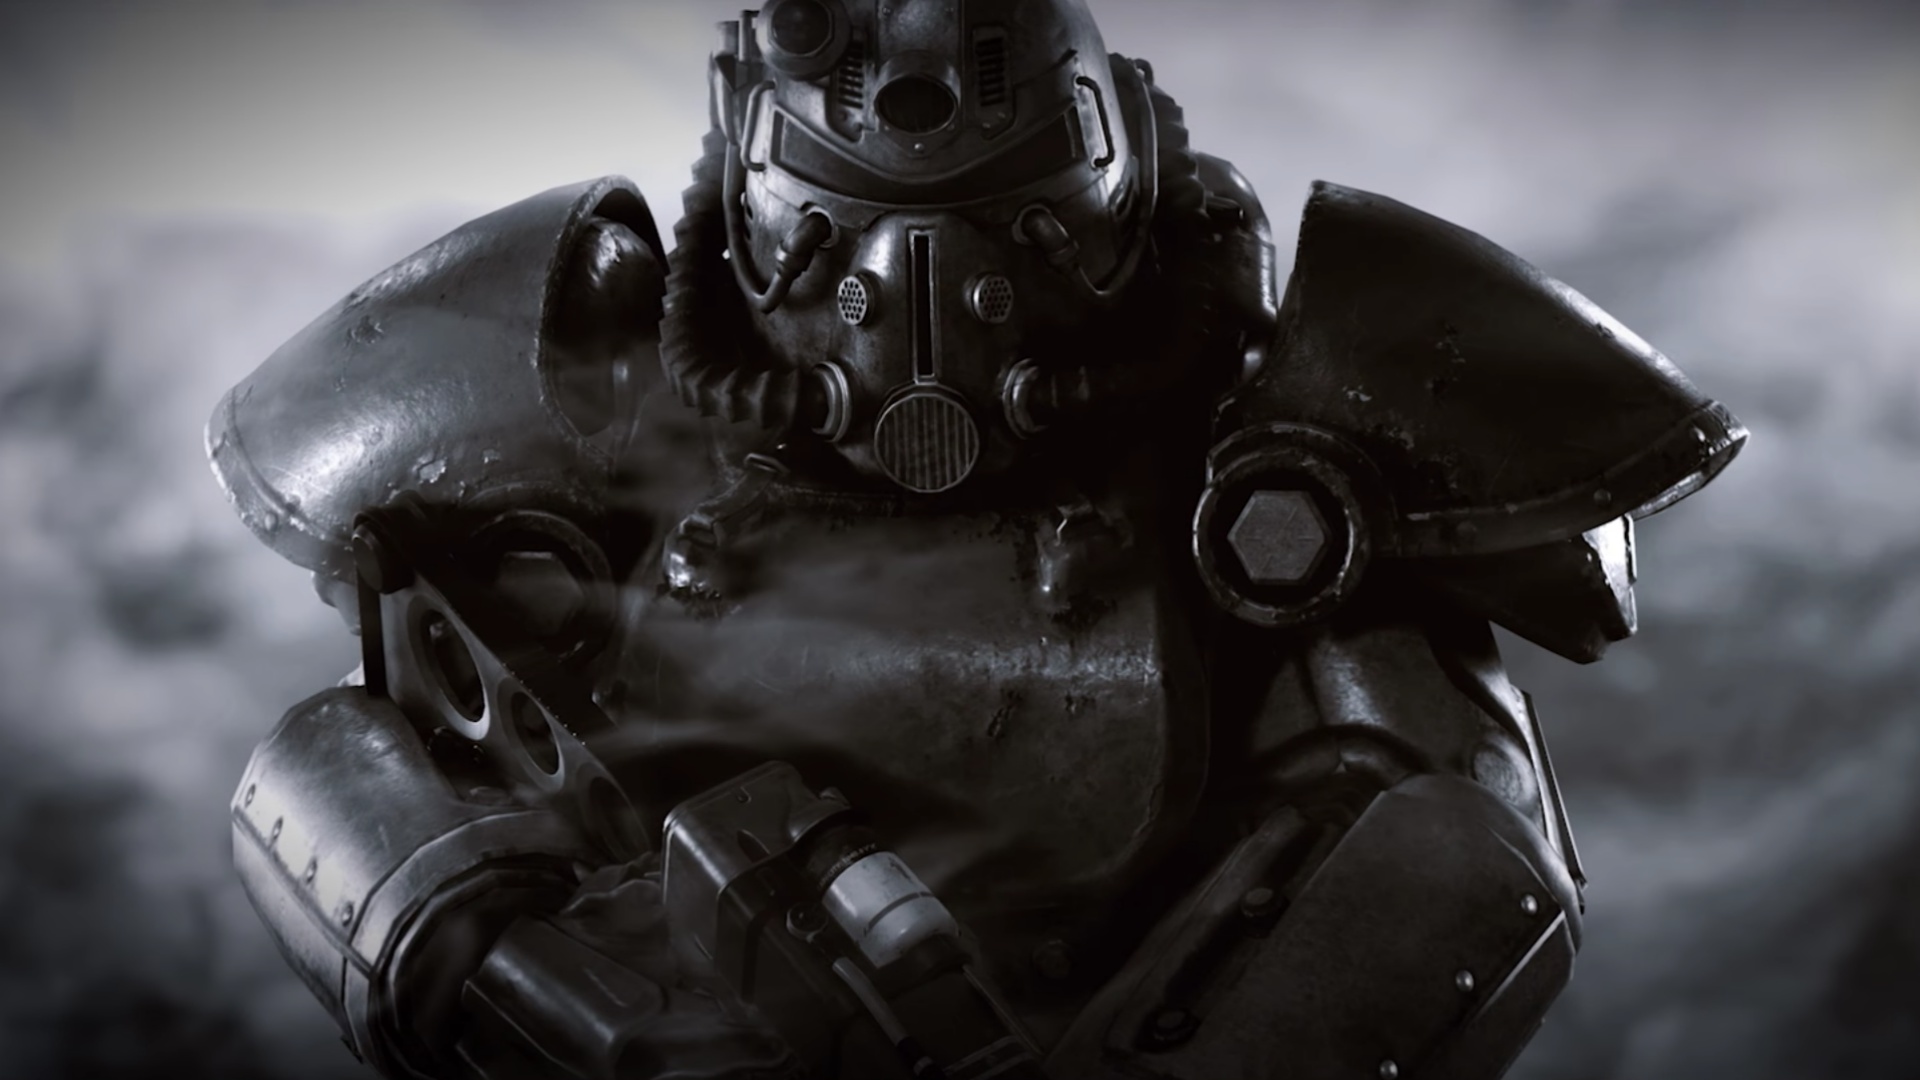 اولین تصویر رسمی از سریال Fallout منتشر شد